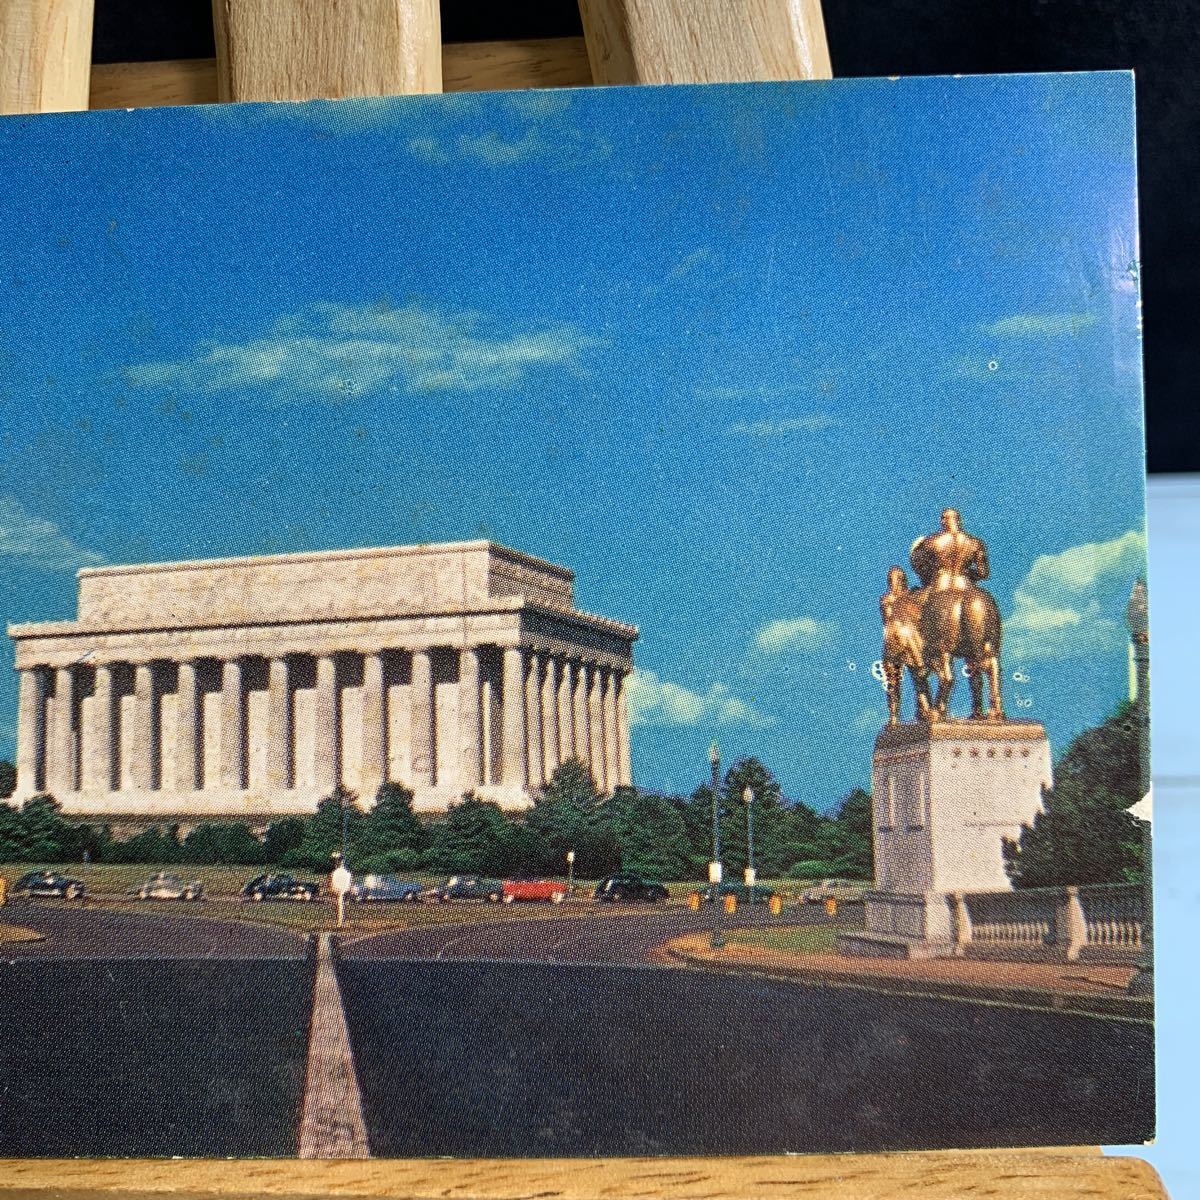 絵葉書 絵はがき 古い絵葉書 古いハガキ ポストカード リンカーン記念館、ワシントンD. C.この白い大理石の寺院は1922年に完成しま…(2374)_画像3